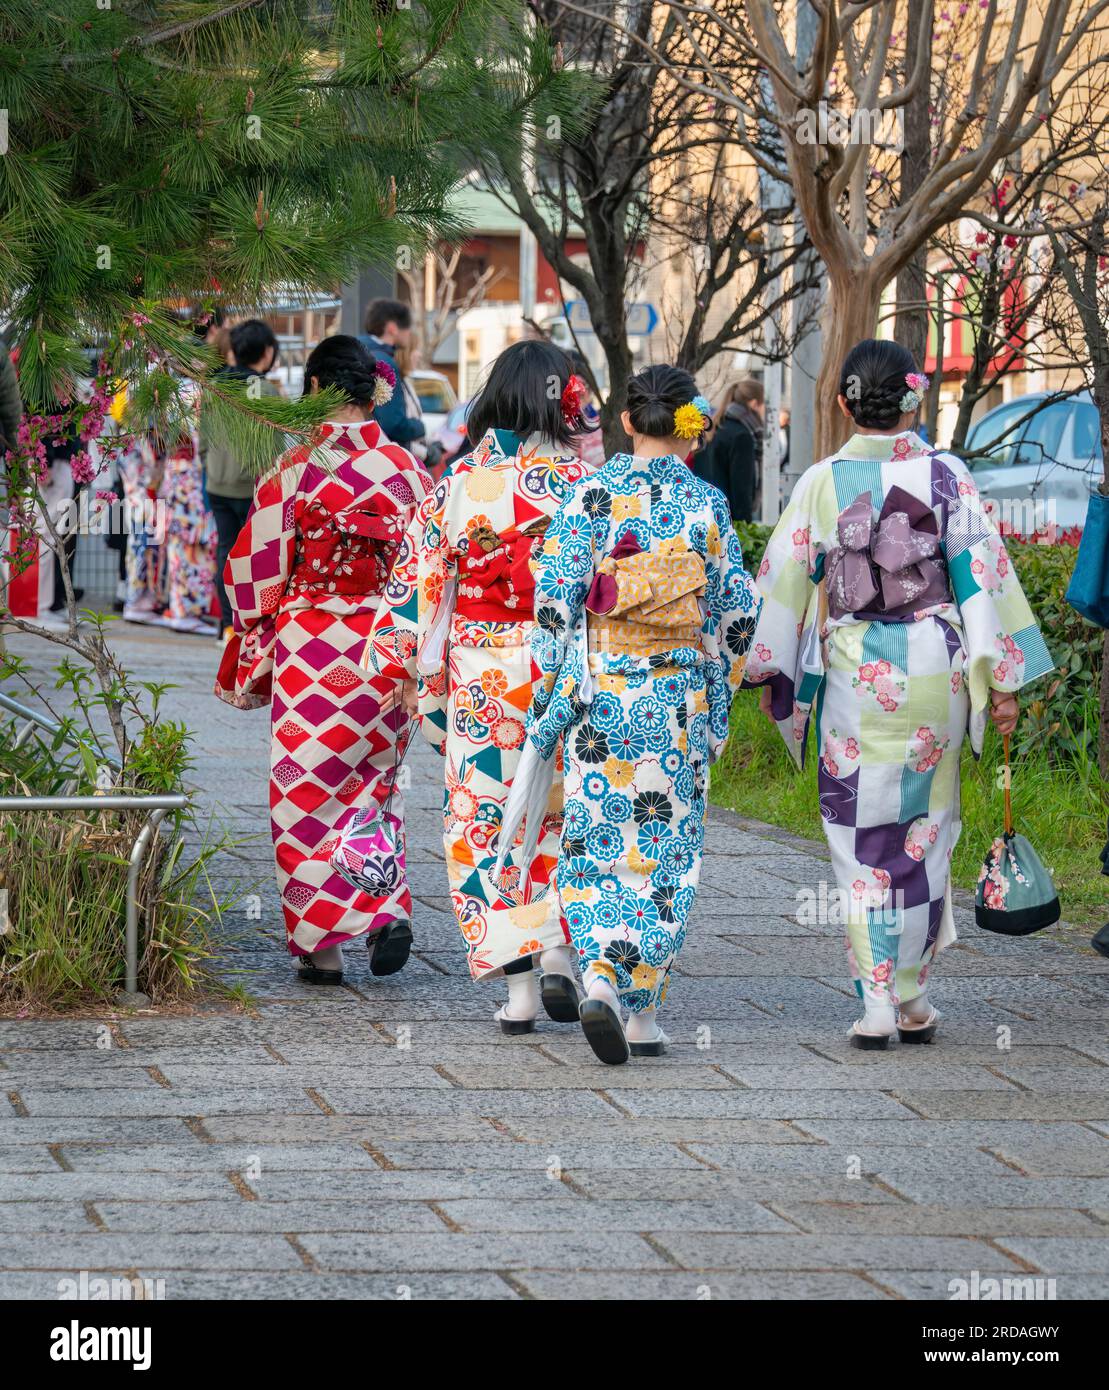 Mujeres jóvenes que llevan el estilo tradicional del kimono de Japón caminando en la concurrida calle de Kyoto. Japón. Formato vertical. Foto de stock